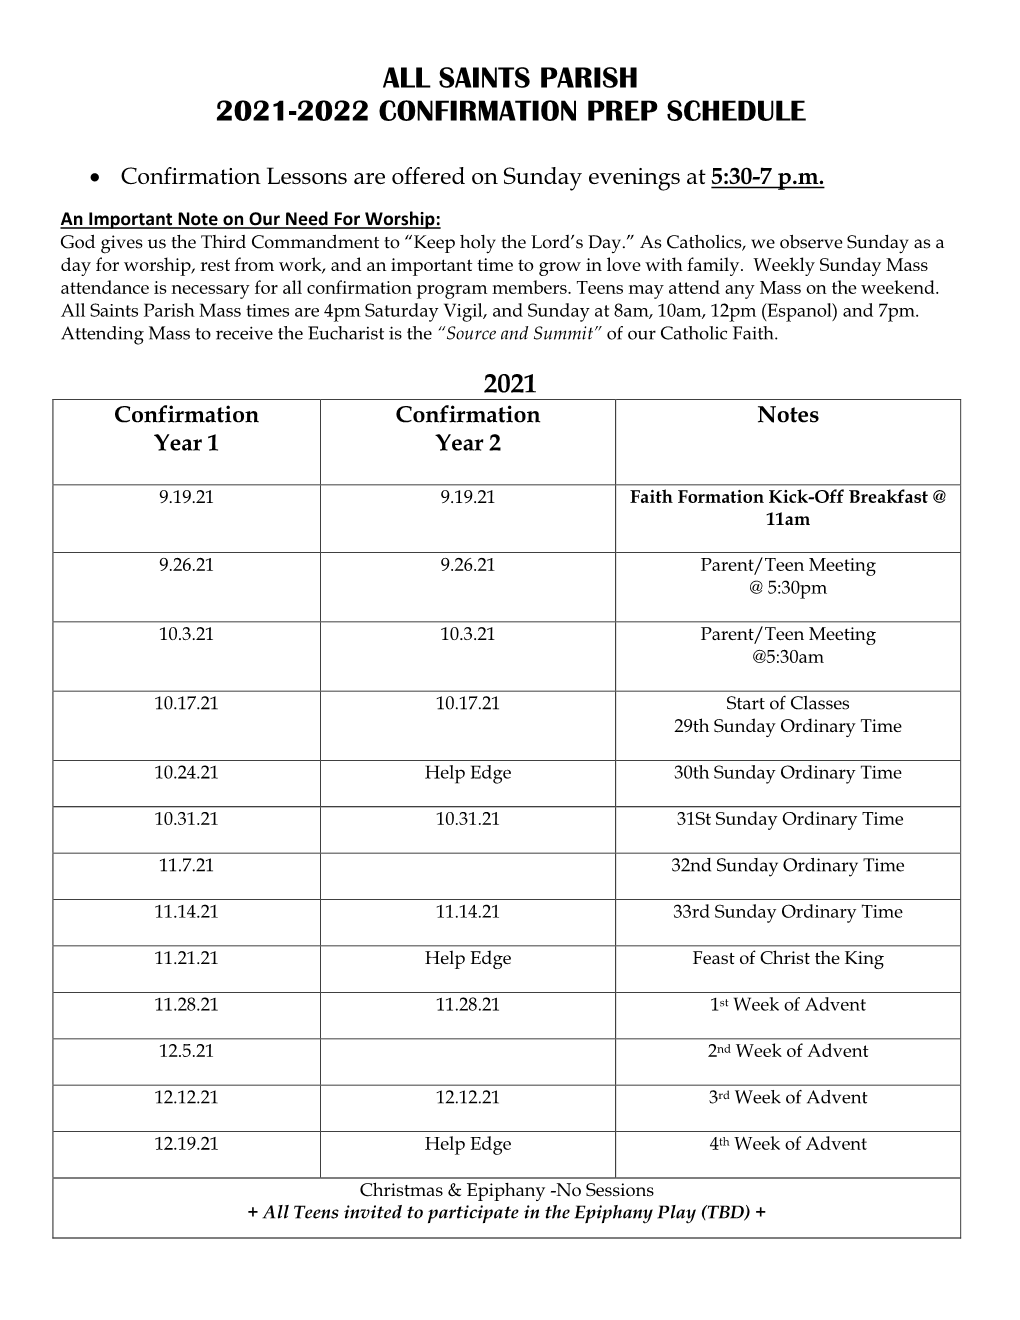 All Saints Parish 2021-2022 Confirmation Prep Schedule